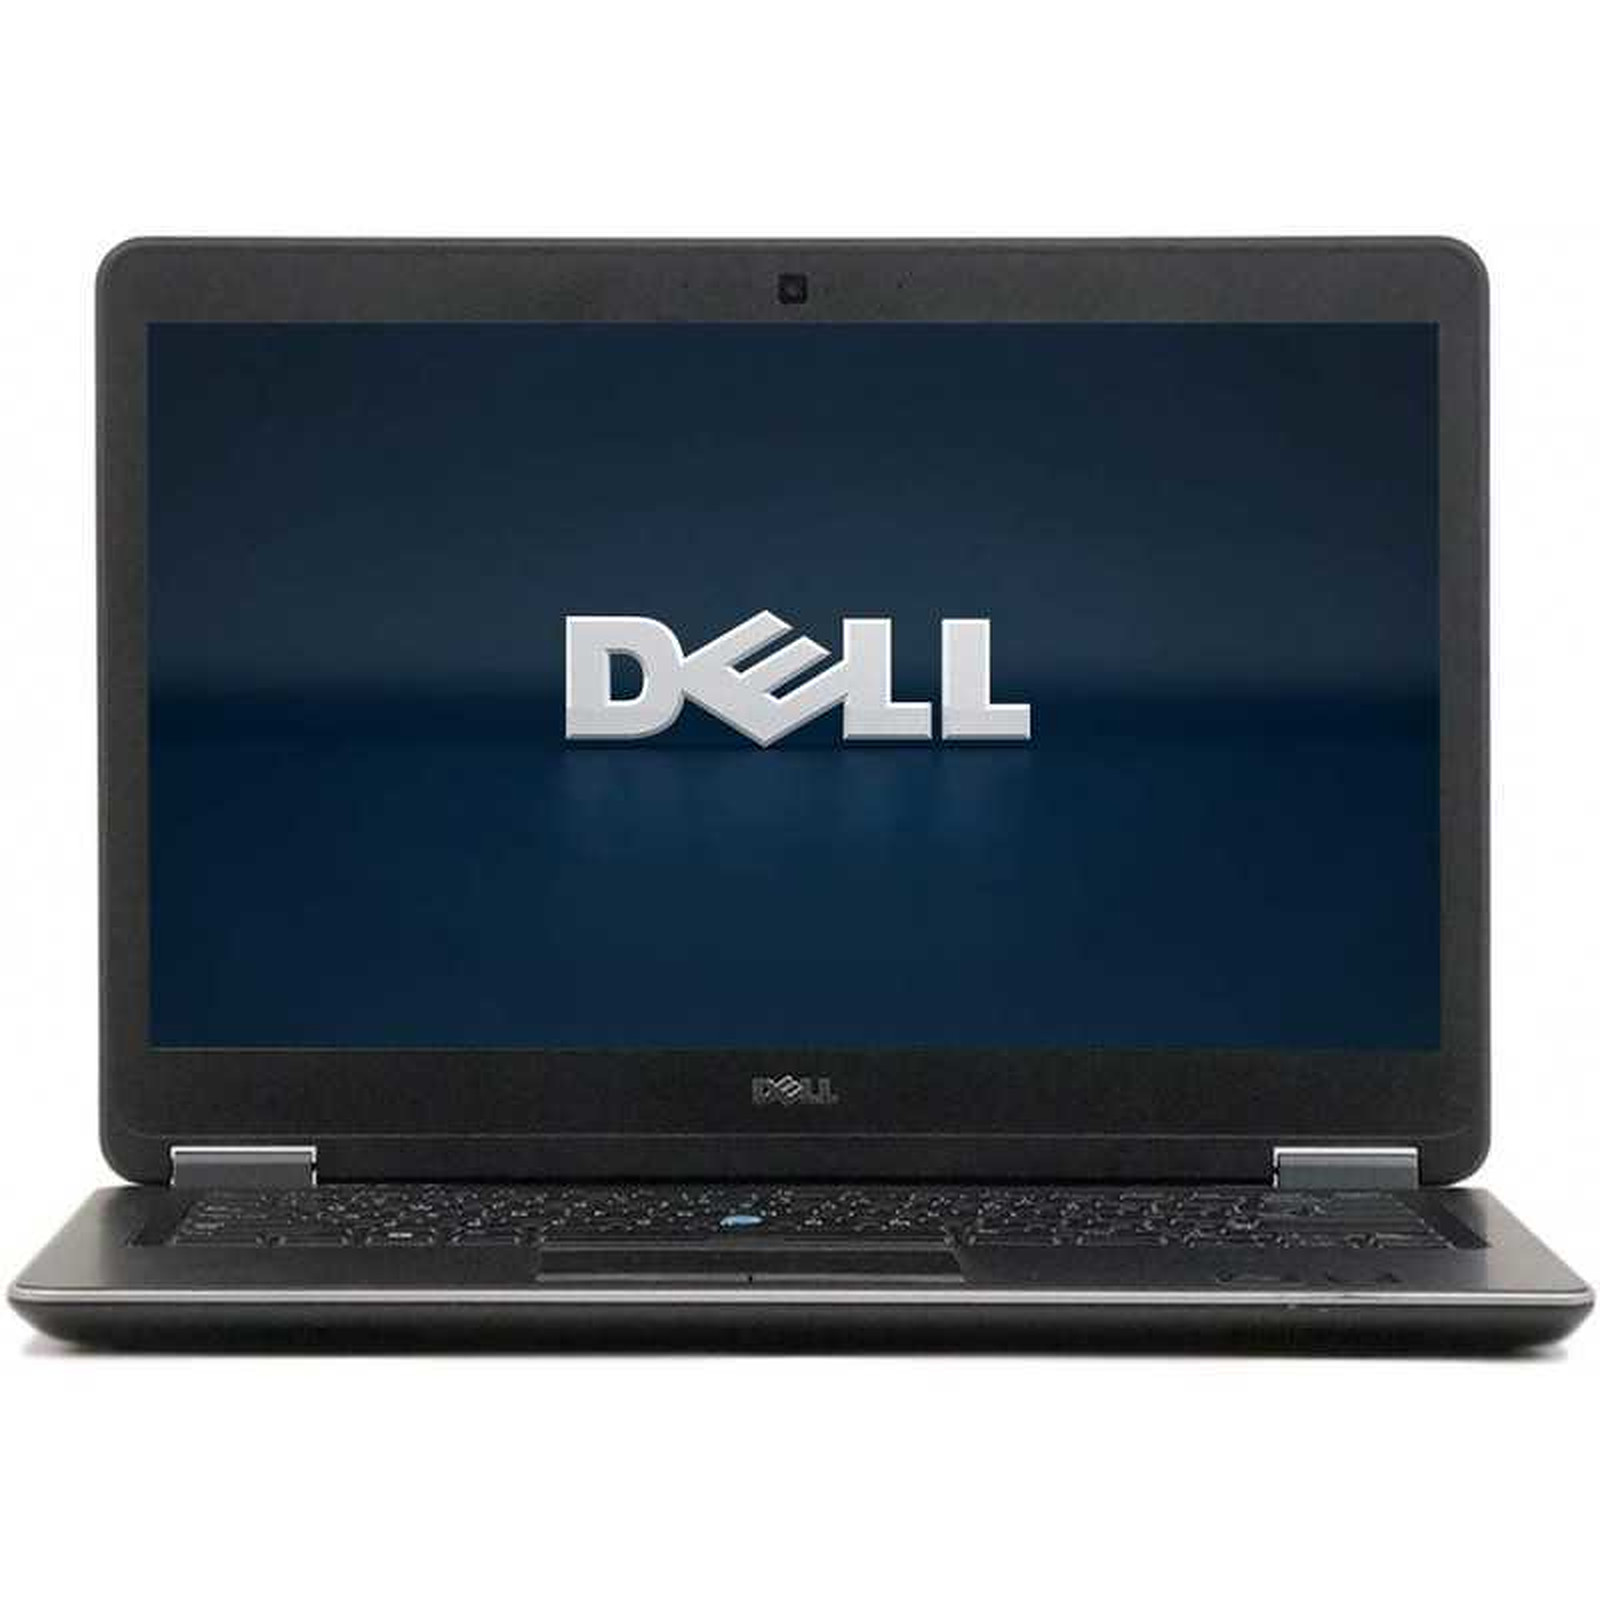 Dell Latitude E7440 (E7440-B-6910) · Reconditionne - PC portable reconditionne Dell